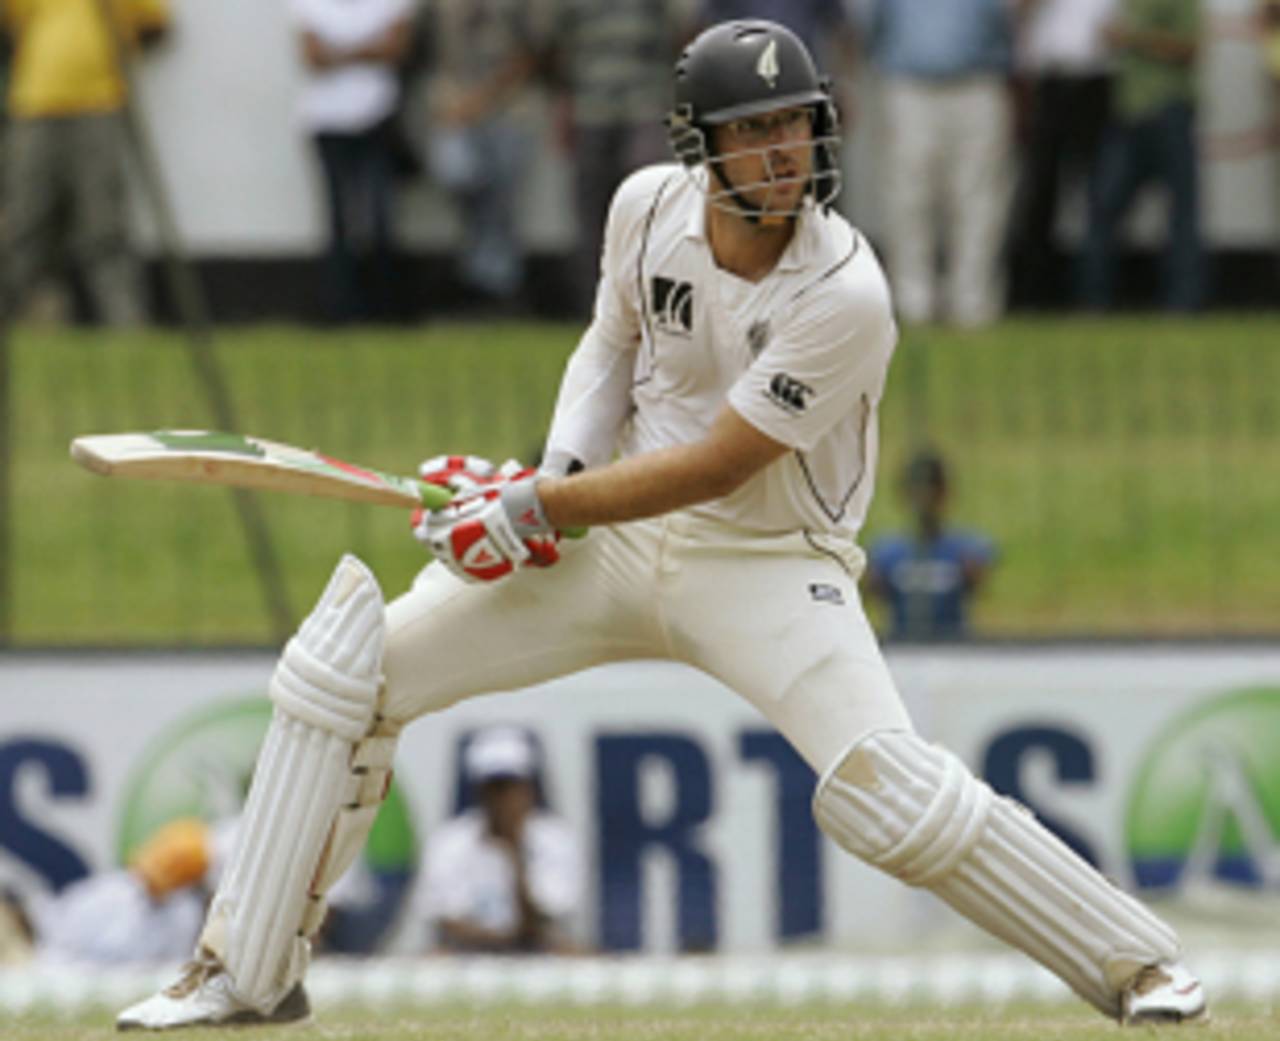 Daniel Vettori cuts, Sri Lanka v New Zealand, 2nd Test, SSC, 5th day, August 30, 2009